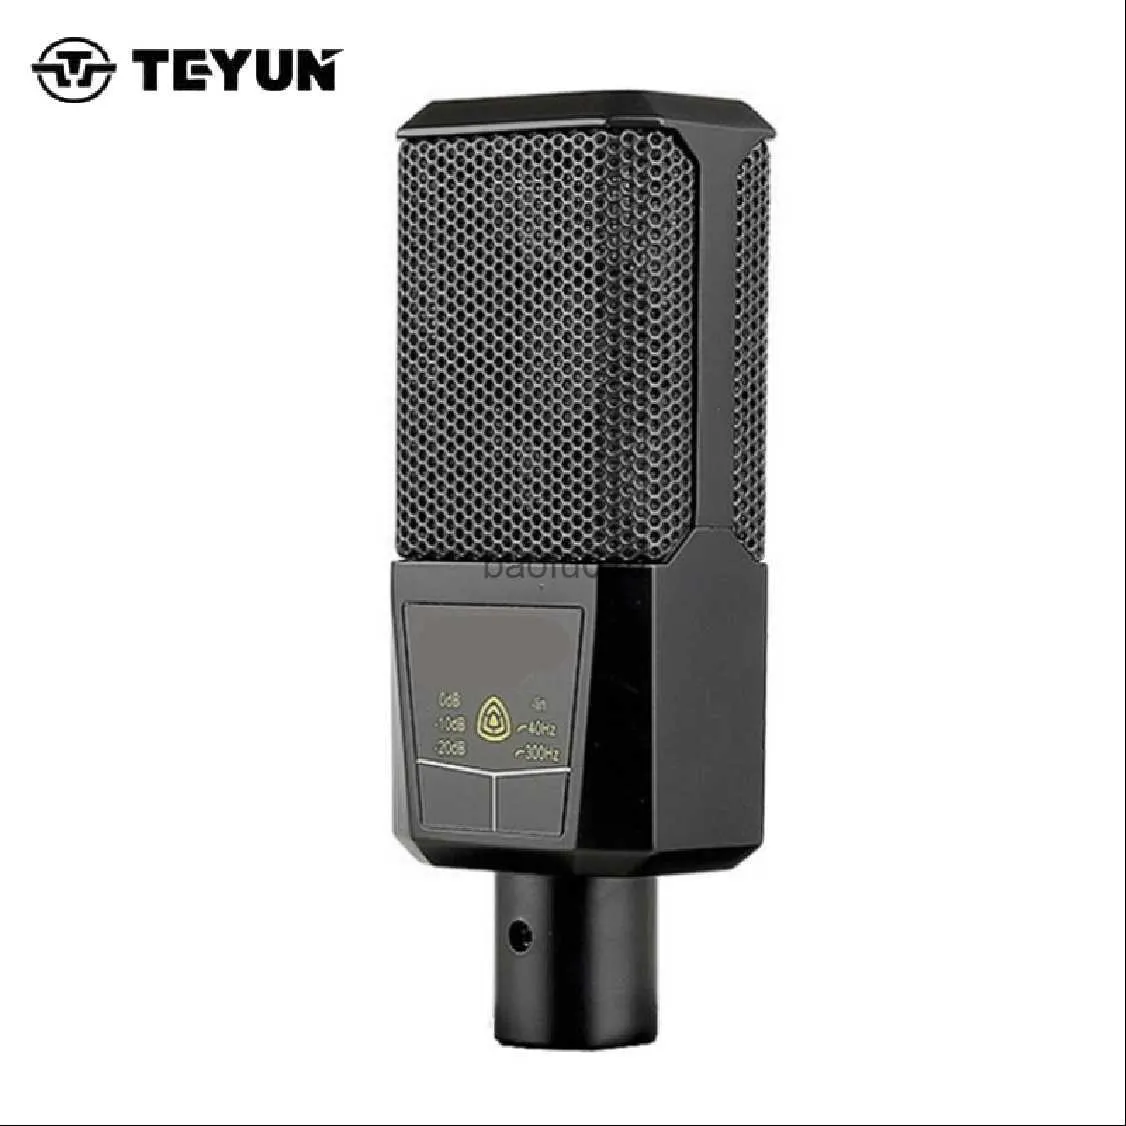 Microfones V249 Professional Studio Stor membran Desktop Kondensator Mikrofon för Webcast Live Recording Singing Broadcasting HKD230818